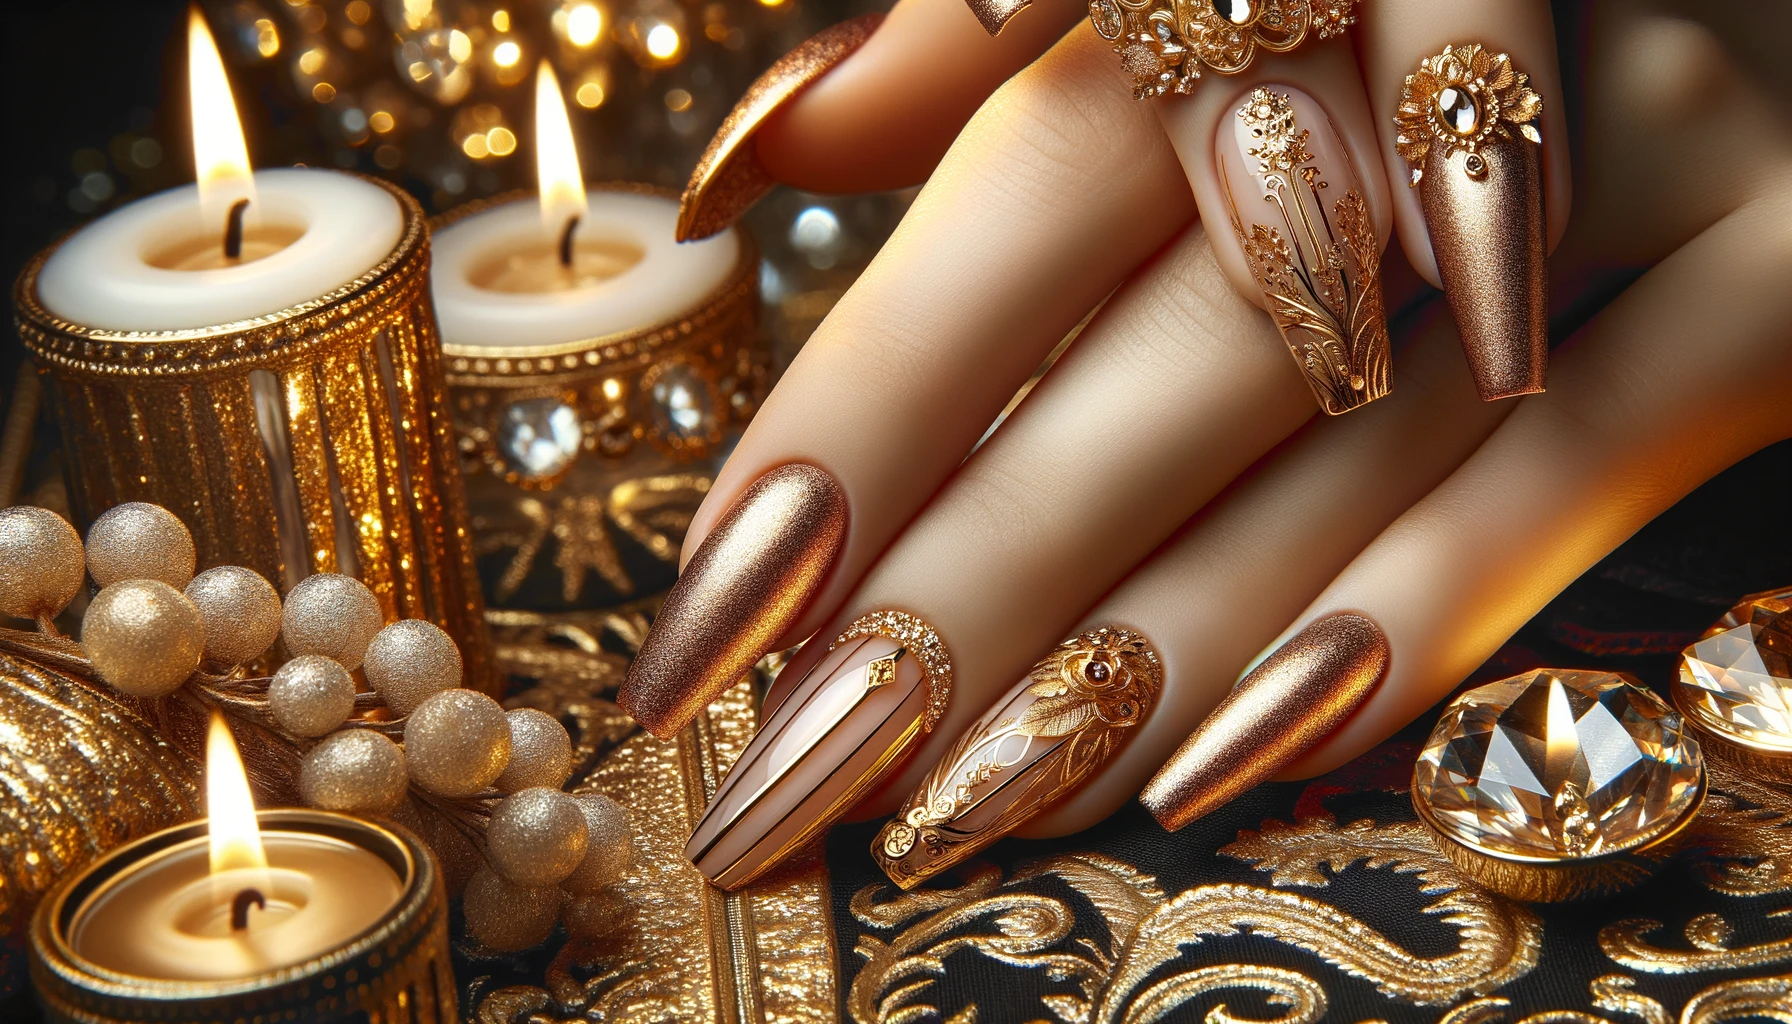 Paznokcie ze złotym akcentem - inspiracje na eleganckie złote paznokcie zdobione